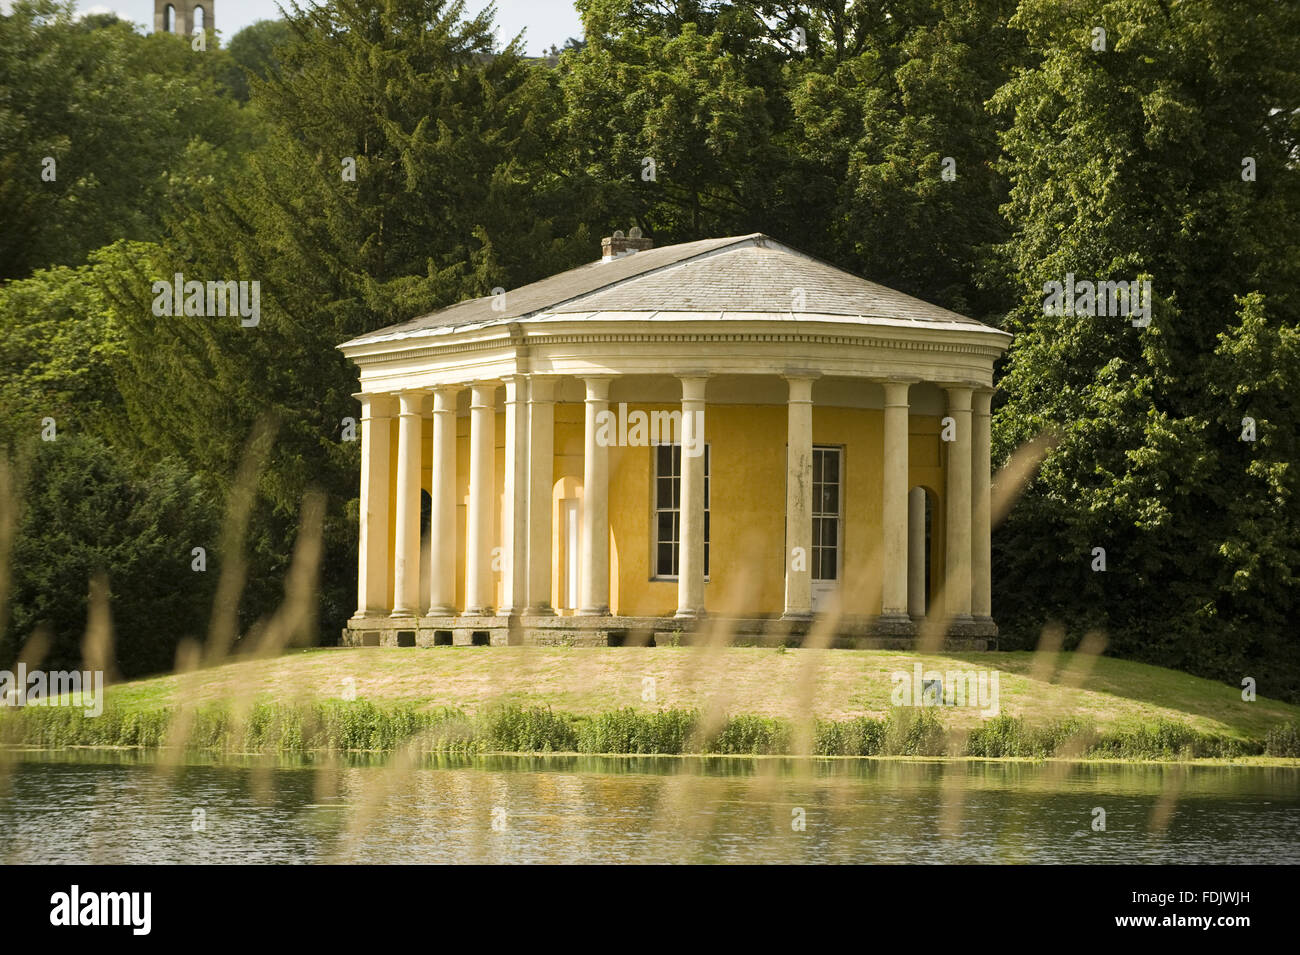 Der Musik-Tempel auf einer Insel im See im West Wycombe Park, Buckinghamshire. Der Tempel hat eine dorische Kolonnade und wurde von Nicholas Revett in den 1770er Jahren entworfen. Stockfoto